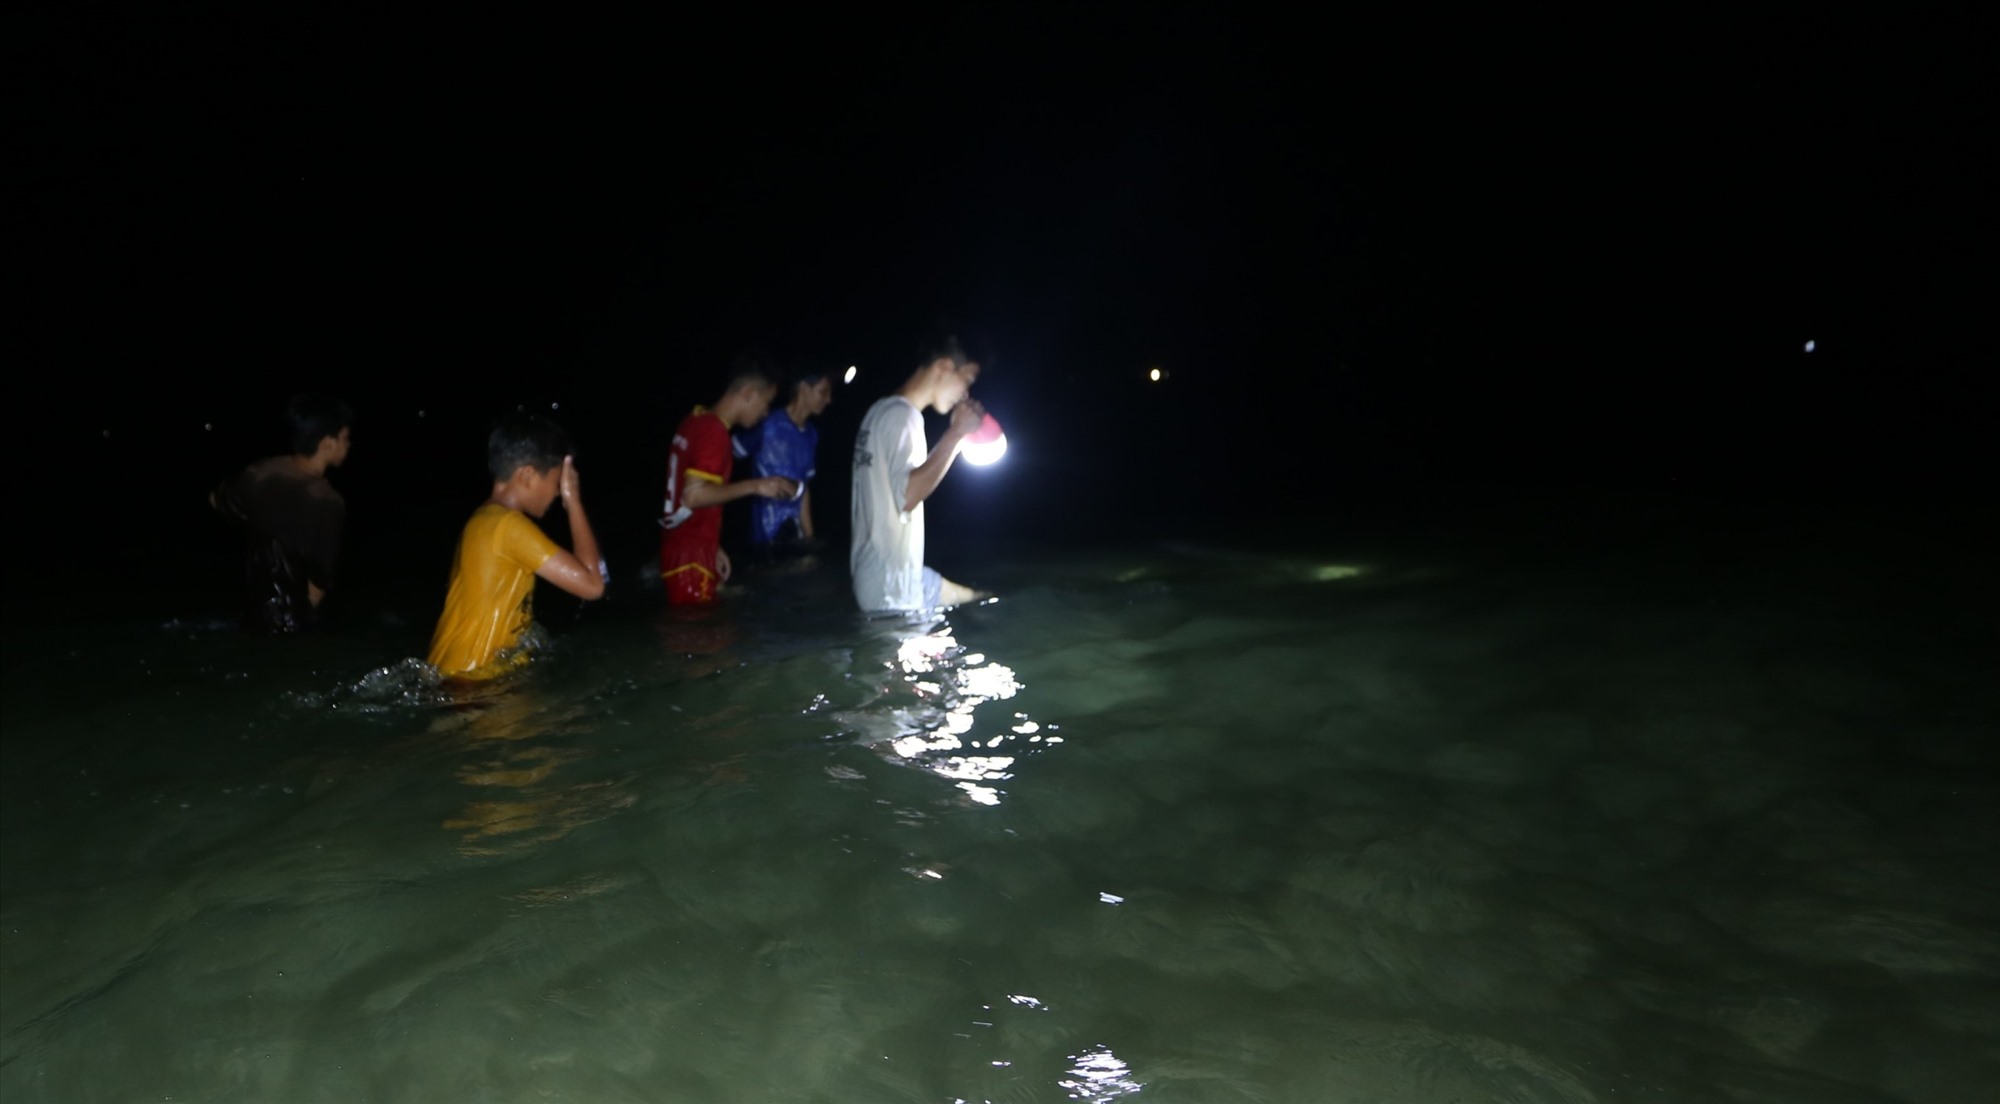 Đổ xô rọi đèn pin xuống một vùng biển ở Quảng Nam bắt con vật cầm lên nó cuốn tay nhồn nhột - Ảnh 3.